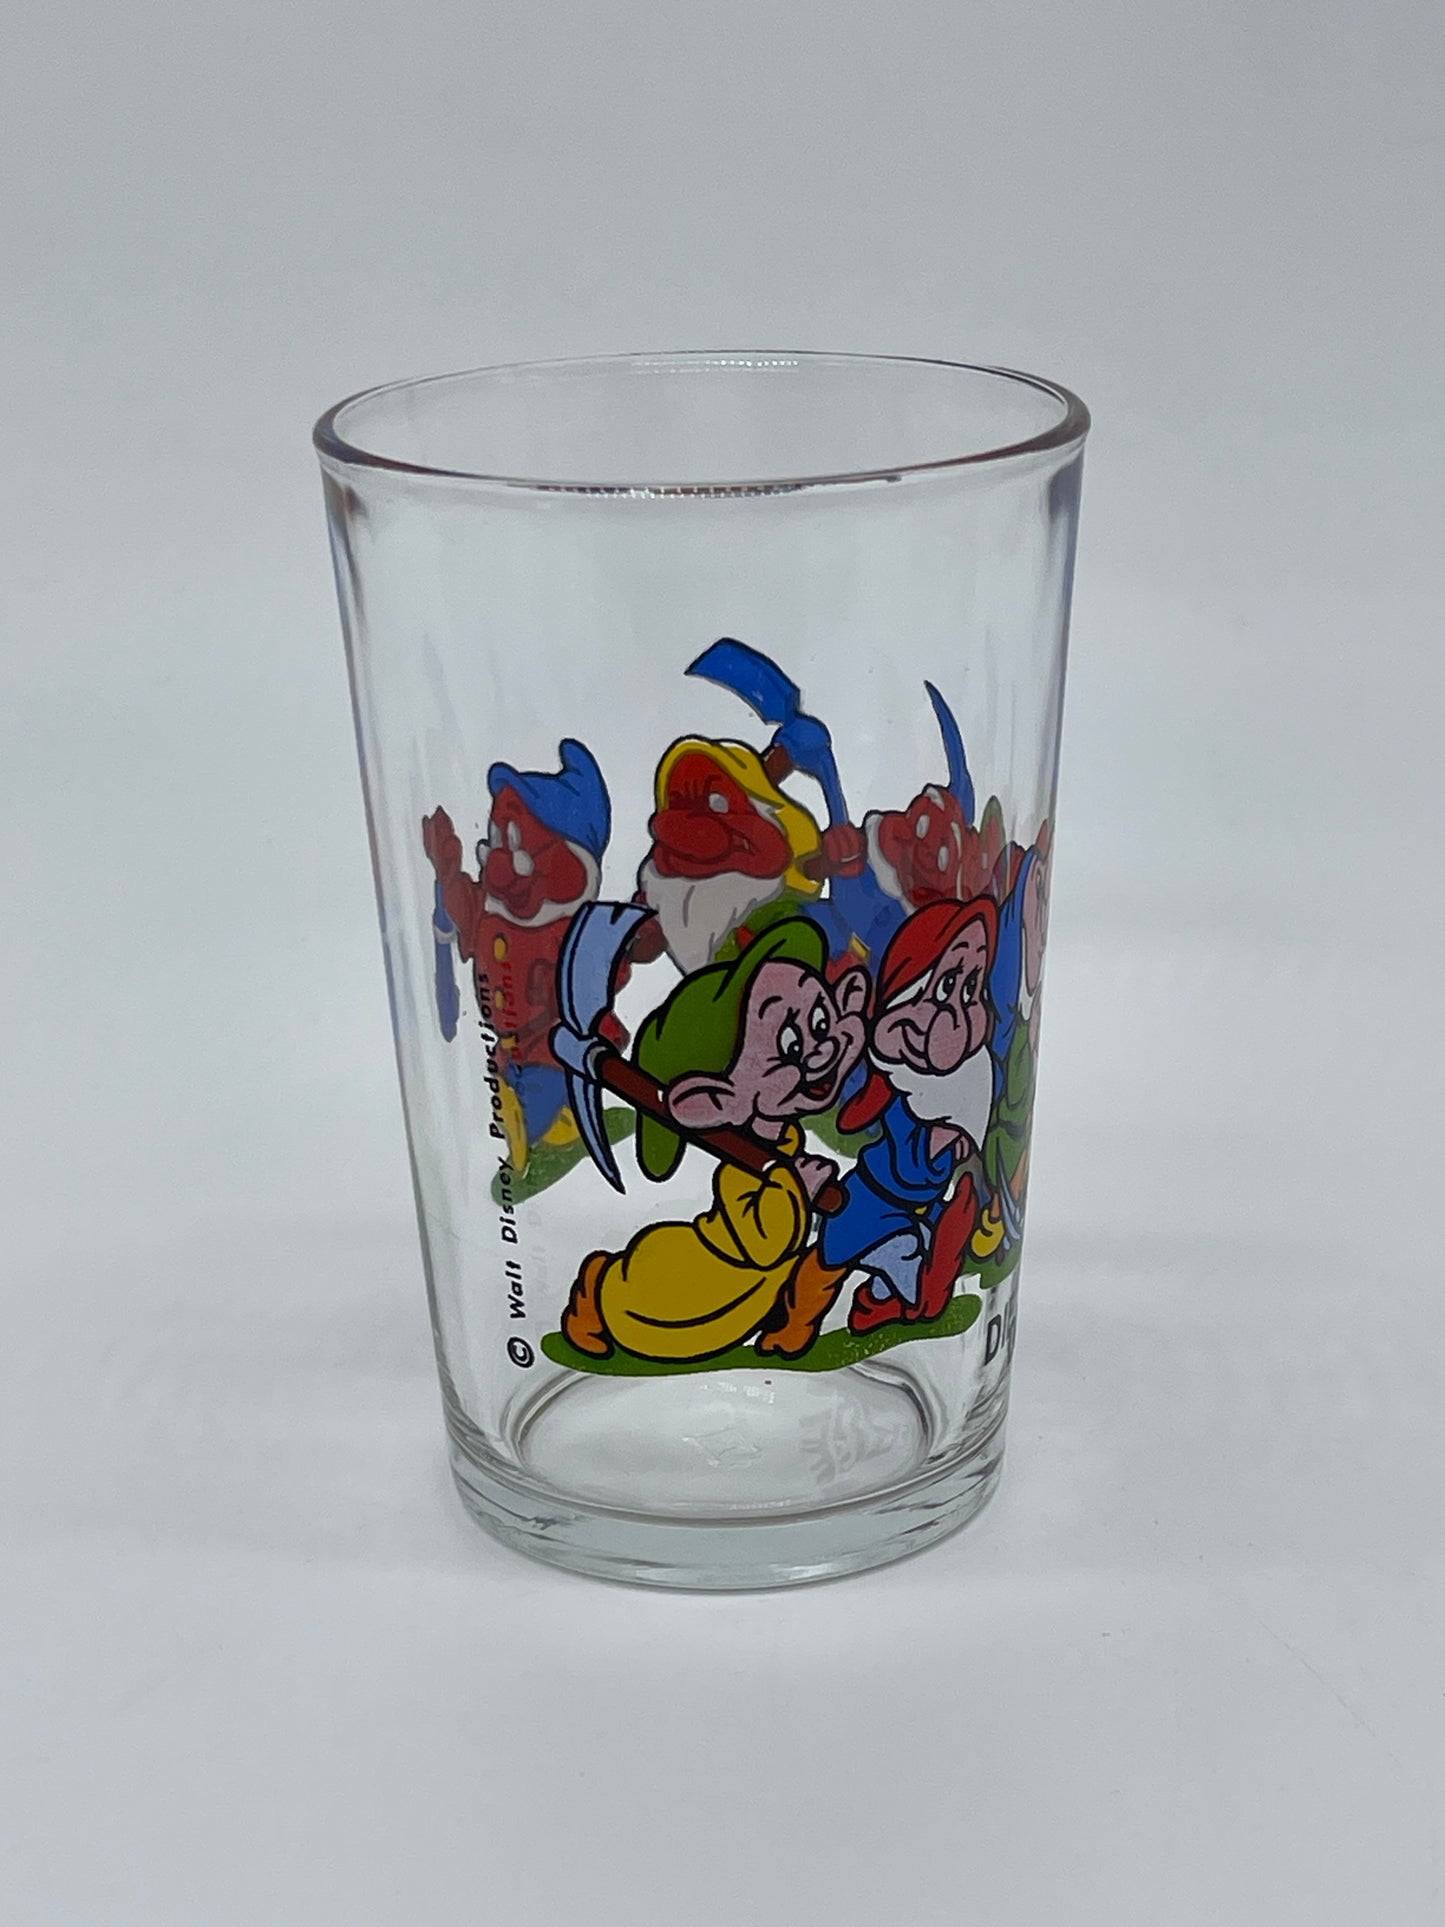 Die sieben Zwerge "Trinkglas / Sammelglas / Glas" Schneewittchen Walt Disney Vintage